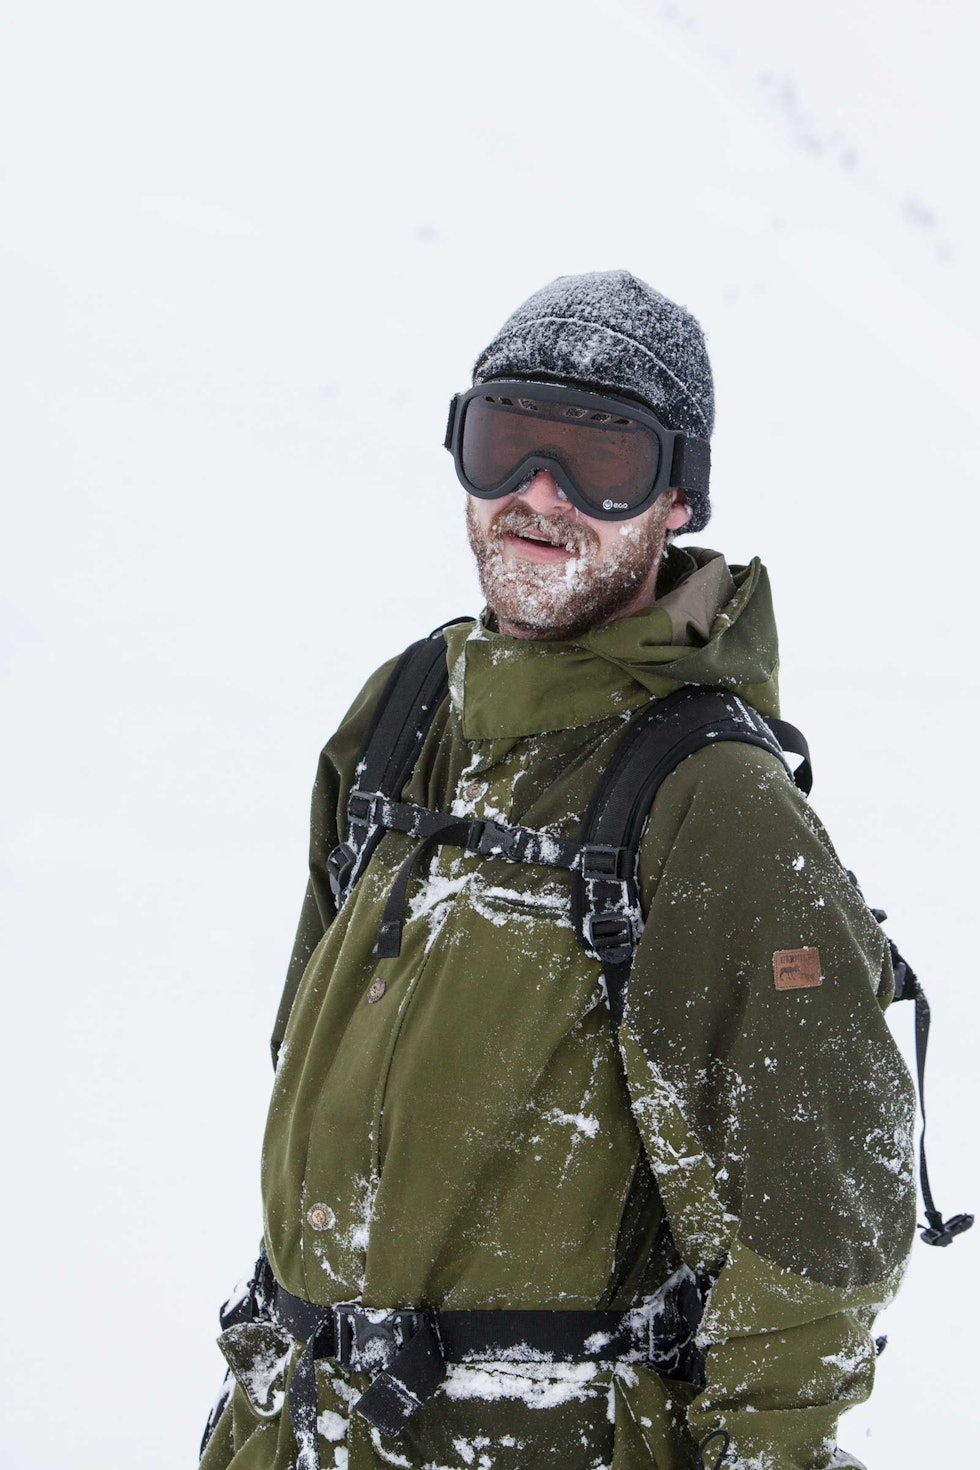 SNØSKJEGG: Knut Christoffersen med snø i skjegget i Sogndal.